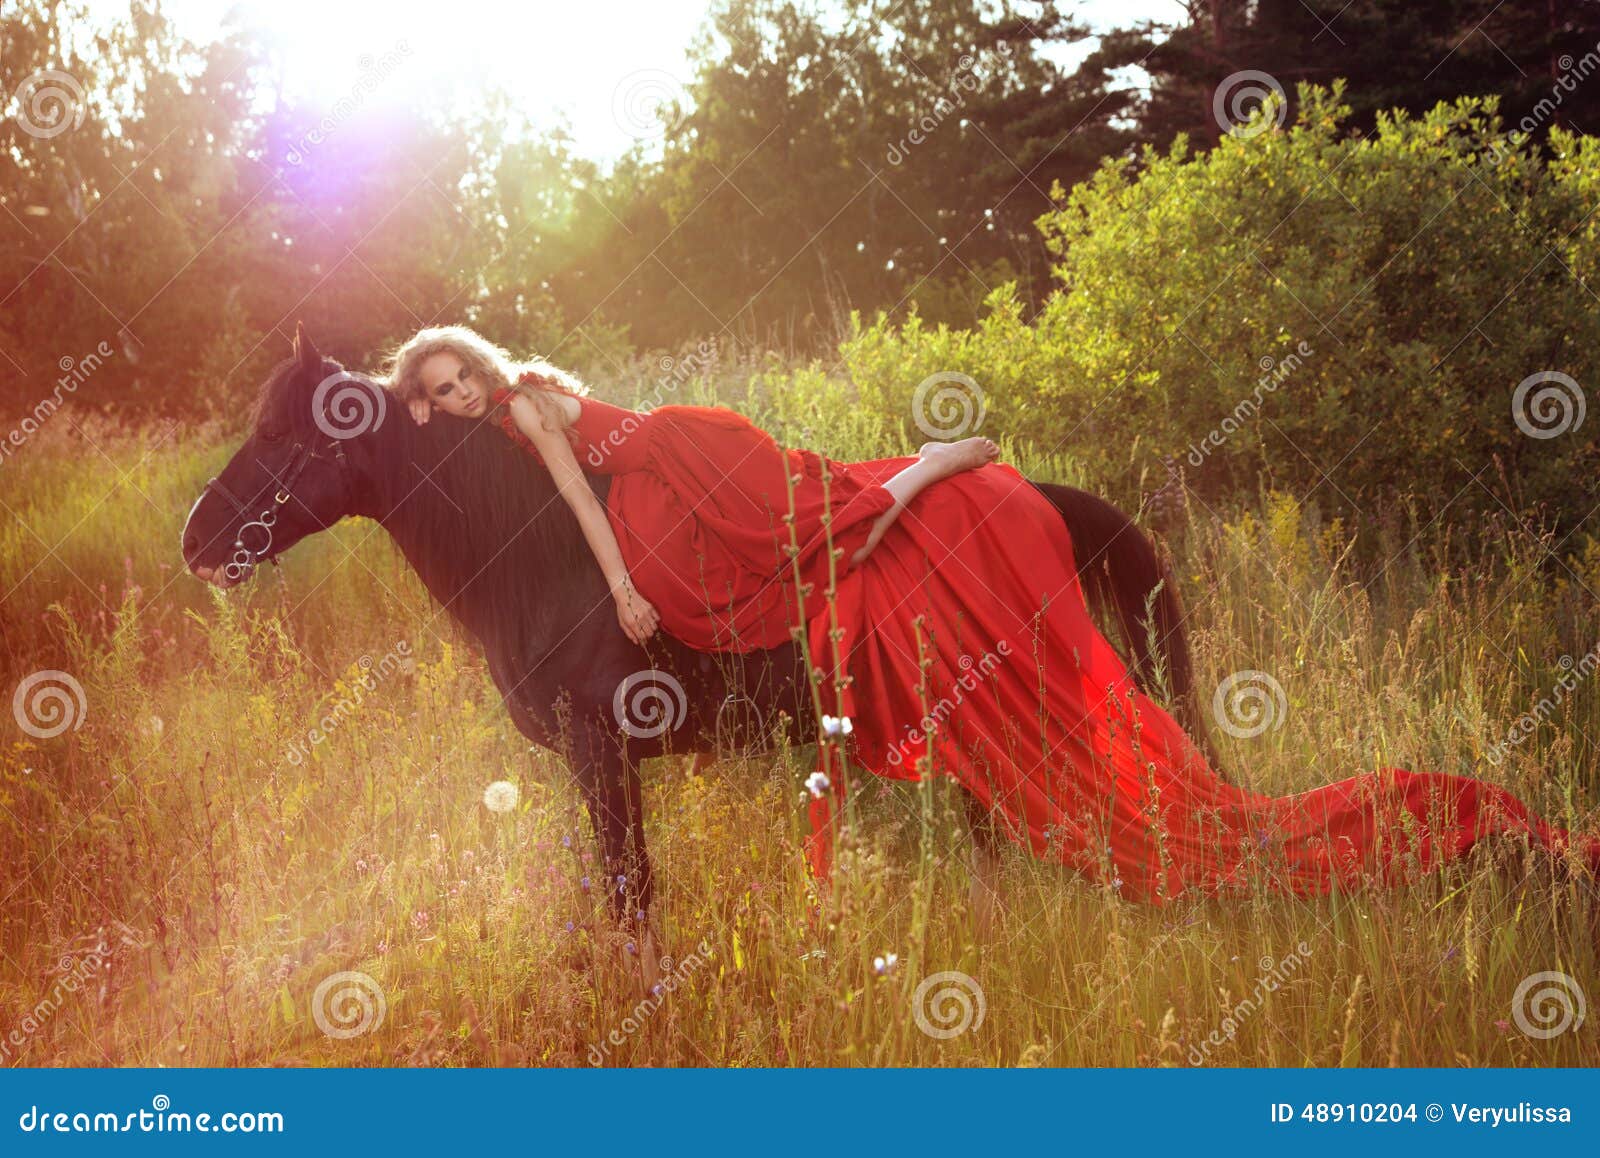 Лежа на коне. Девушка на коне в Красном платье. Девушка с лошадью. Фотосессия в красивом платье с лошадью. Фотосессия с лошадью в Красном платье.